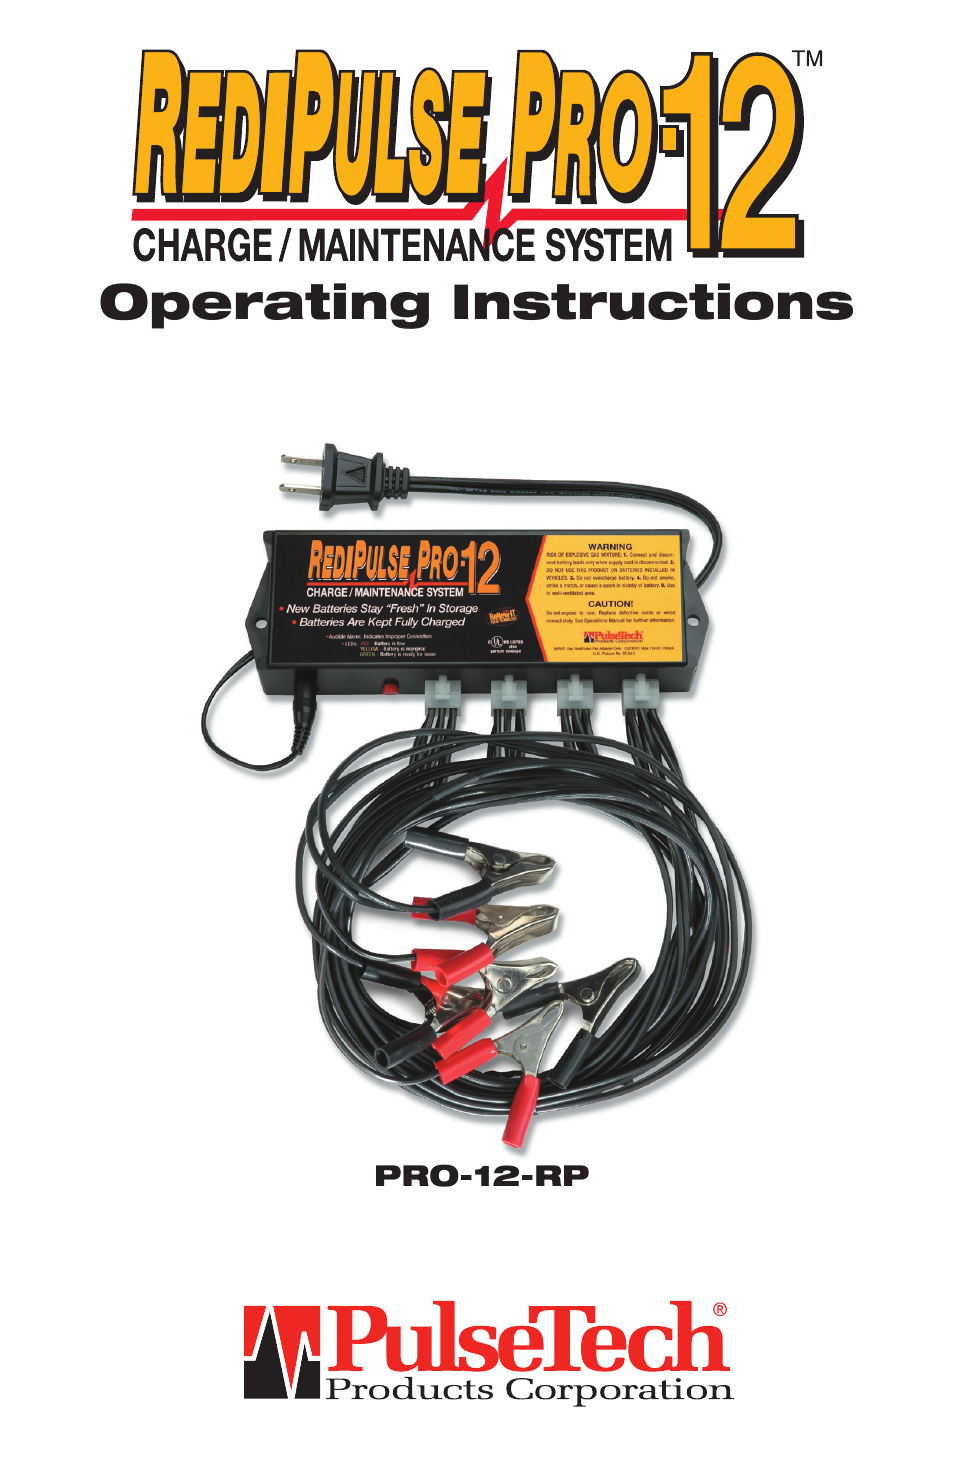 PRO-12-RP 12-Station Battery Maintenance System (746X915)